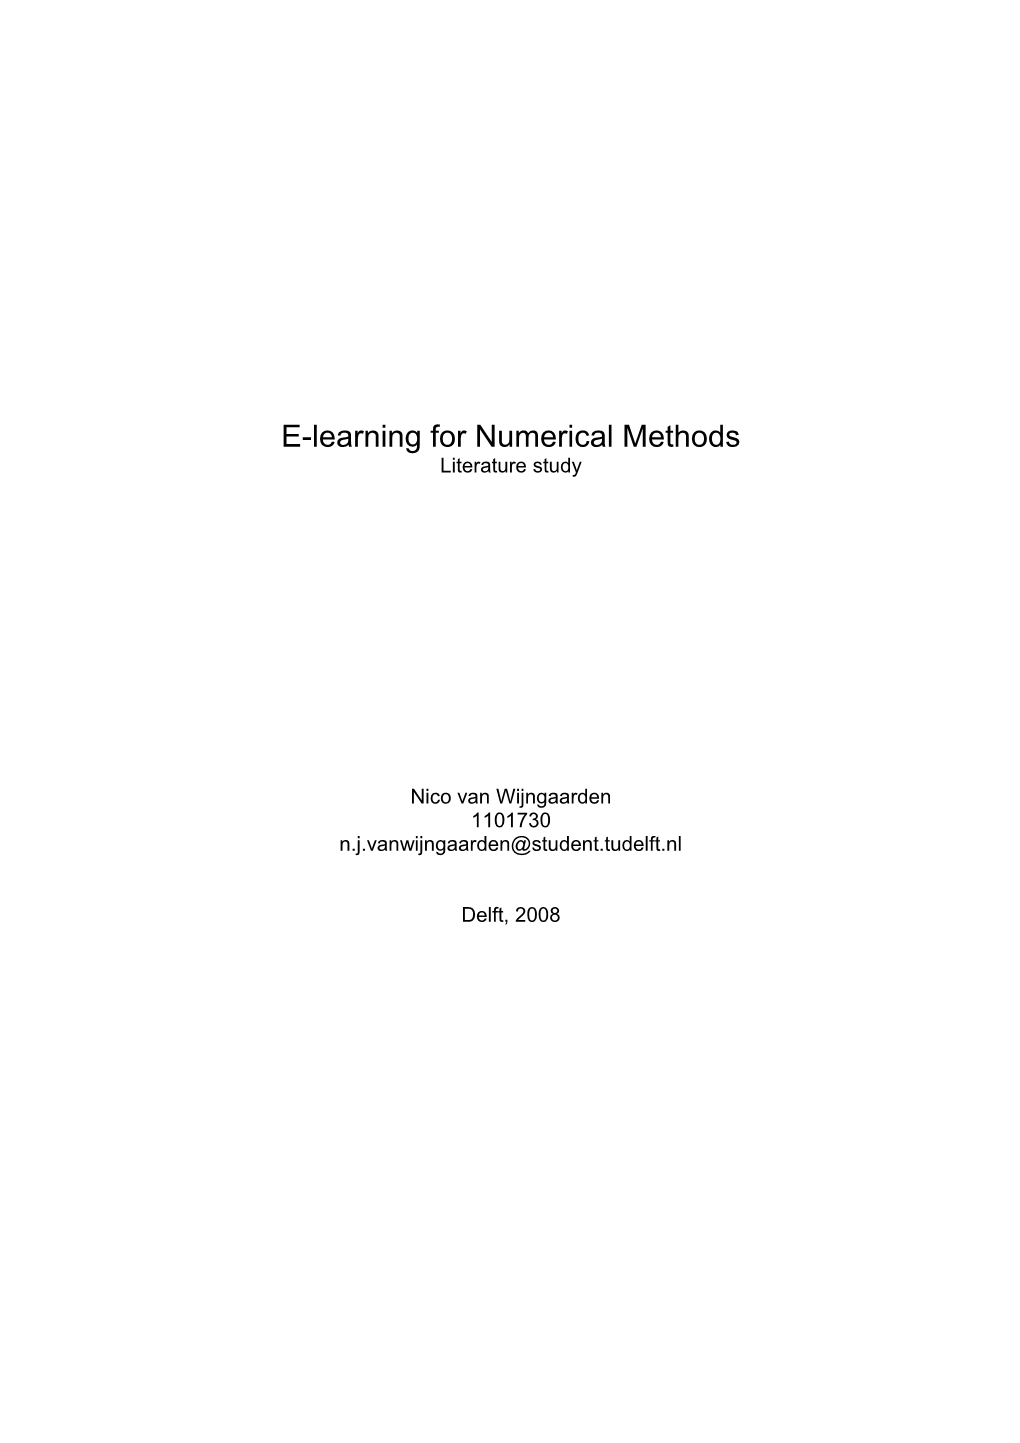 E-Learning for Numerical Methods